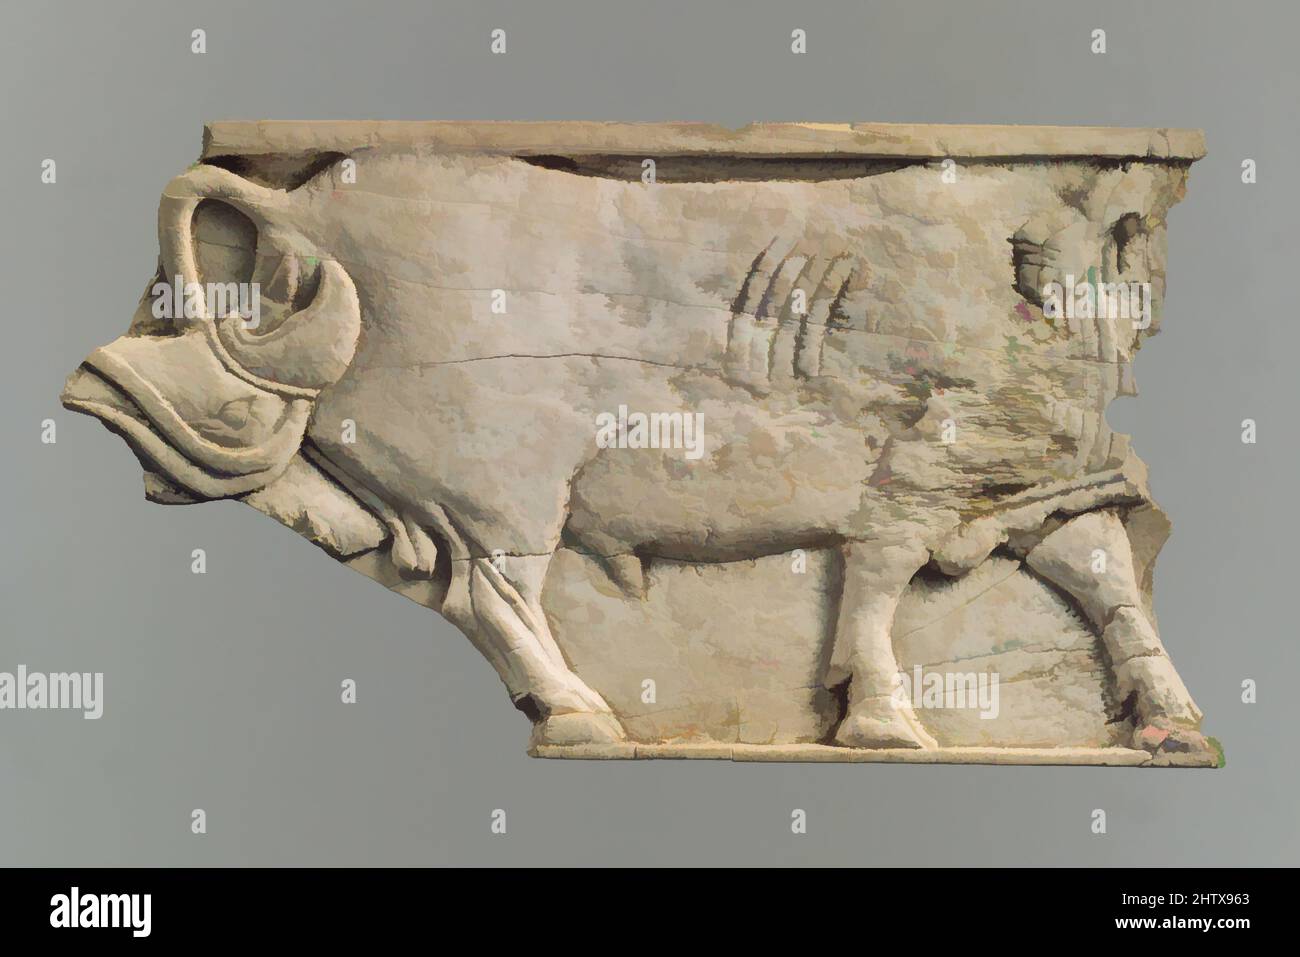 Arte ispirata da frammento di placca, Neo-Assiro, ca. 9th–8th secolo a.C., Mesopotamia, Nimrud (antico Kalhu), Assiro, Avorio, 3,86 x 7,01 x 0,28 poll. (9,8 x 17,81 x 0,71 cm), Ivory/Bone-Reliefs, opere classiche modernizzate da Artotop con un tuffo di modernità. Forme, colore e valore, impatto visivo accattivante sulle emozioni artistiche attraverso la libertà delle opere d'arte in modo contemporaneo. Un messaggio senza tempo che persegue una nuova direzione selvaggiamente creativa. Artisti che si rivolgono al supporto digitale e creano l'NFT Artotop Foto Stock